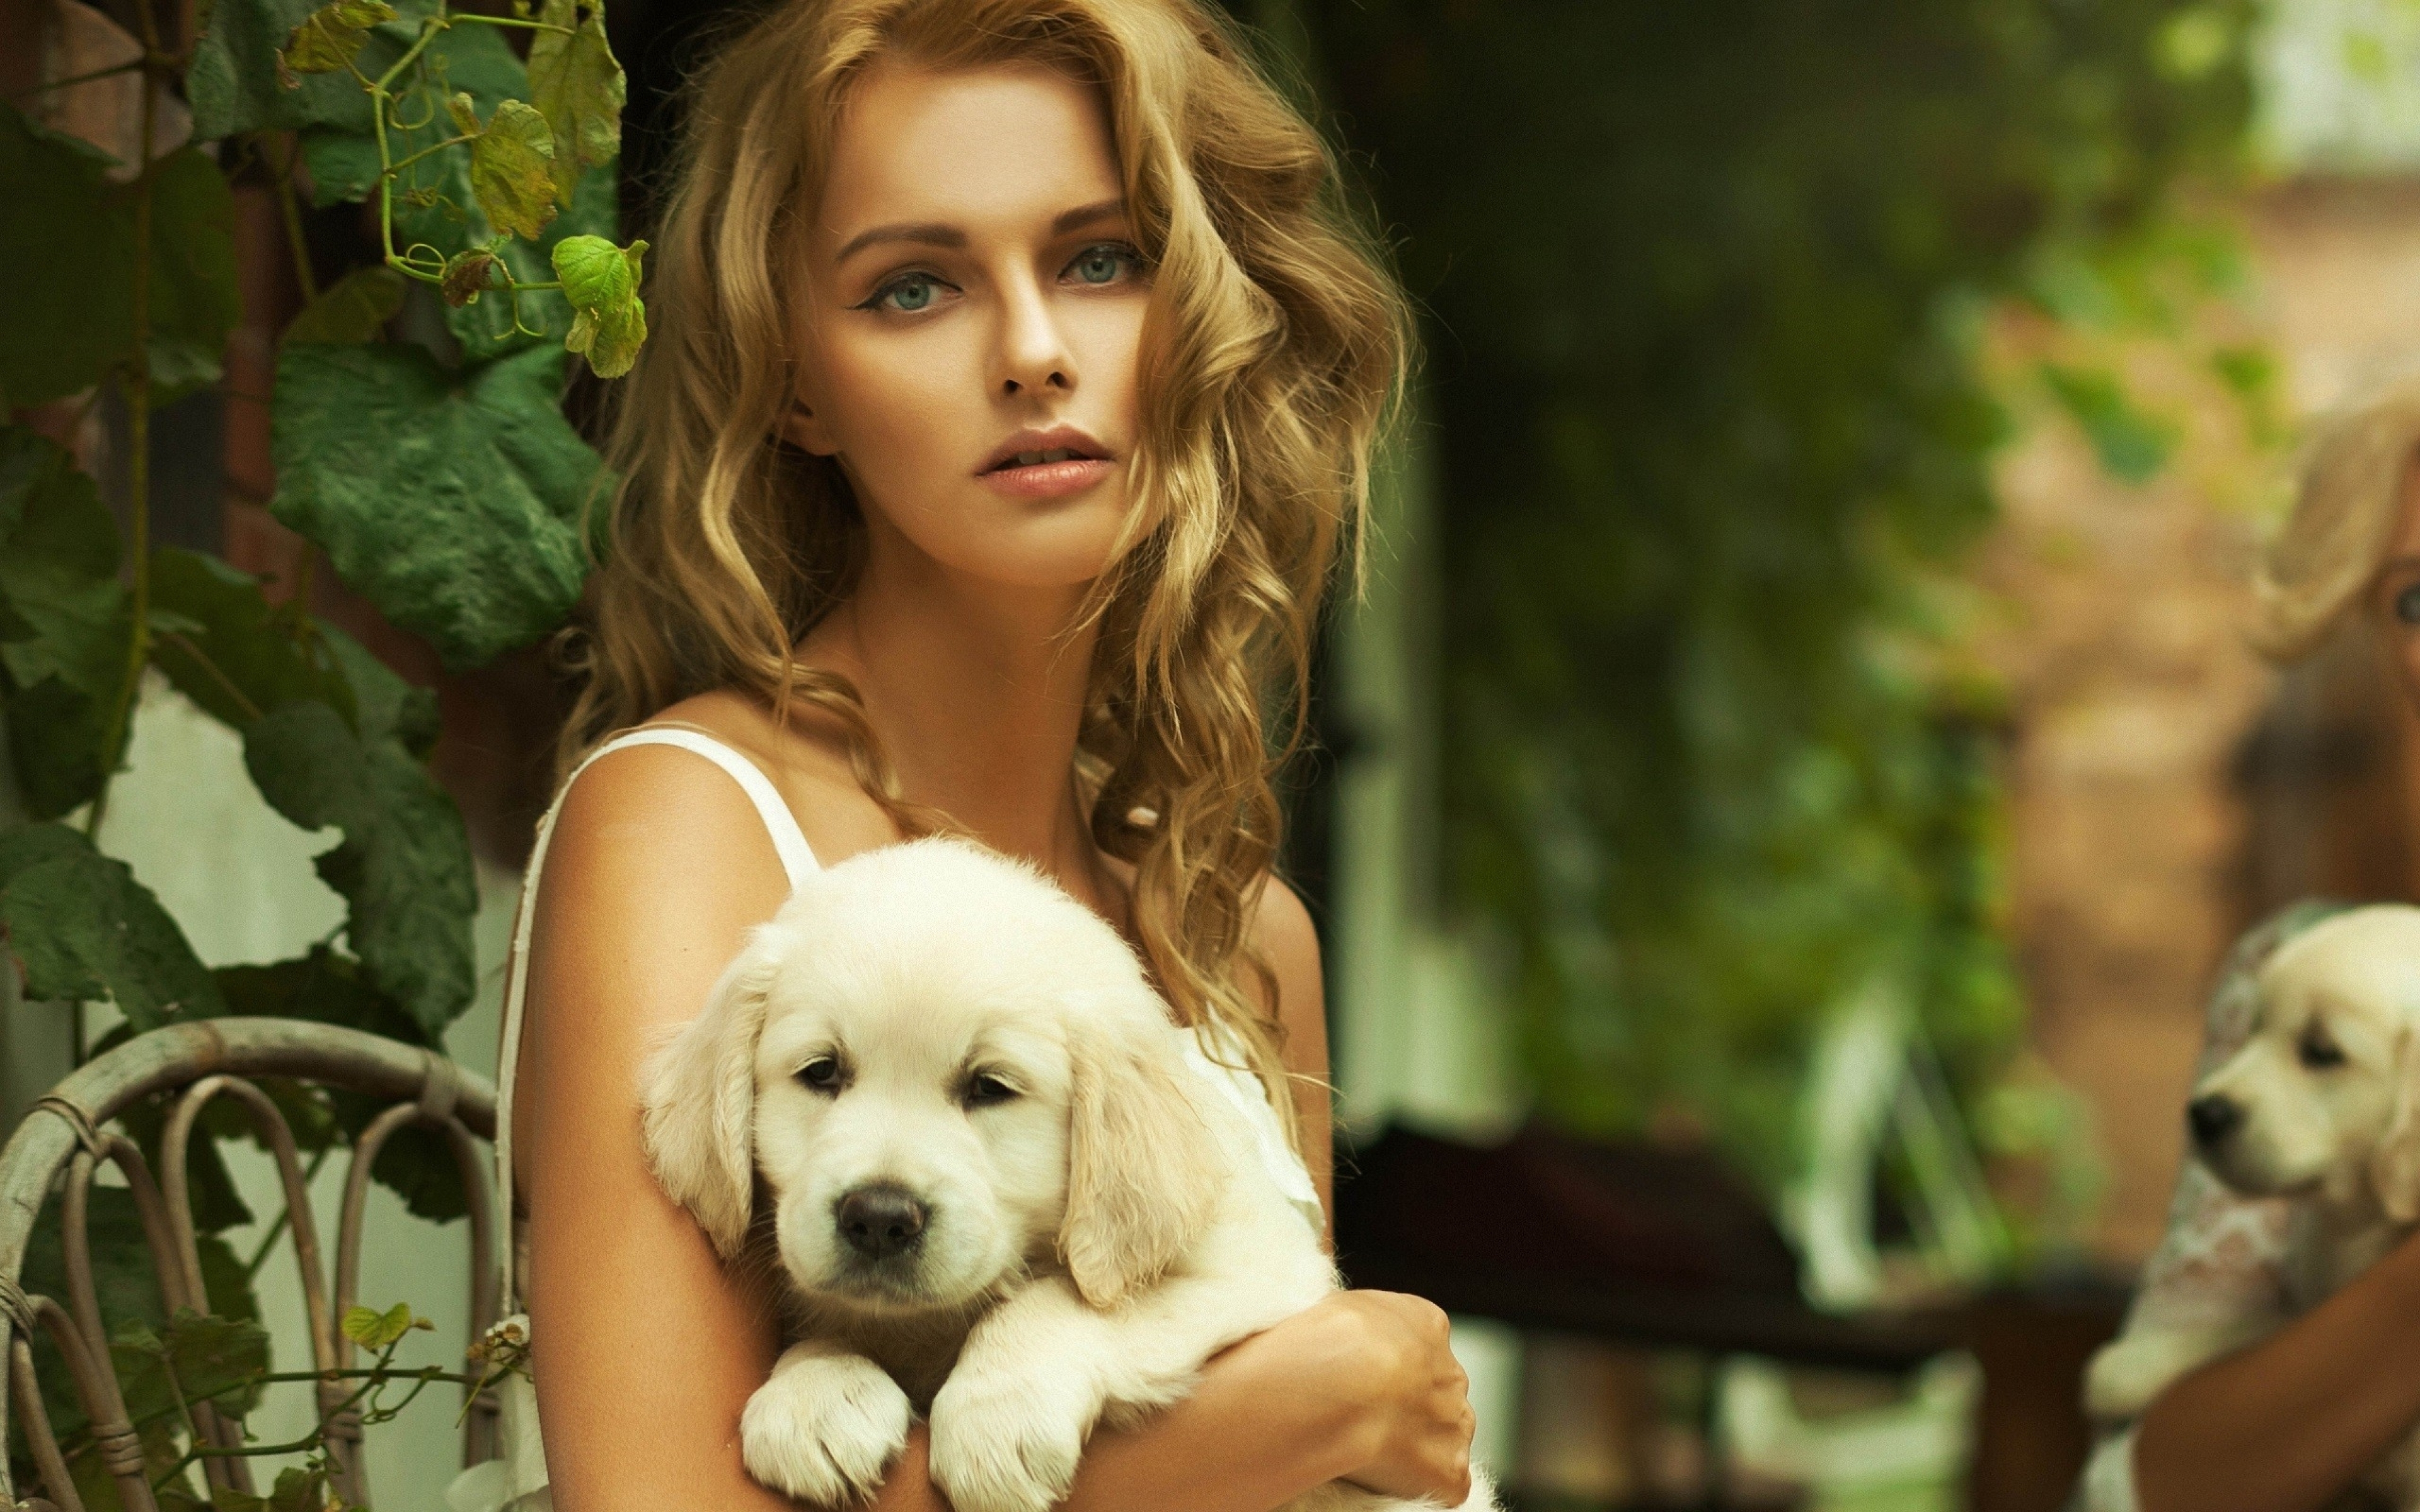 Породистая девушка. Девушка с собачкой. Красивая девушка с собачкой. Блондинка с собачкой. Фотосессия с собакой.